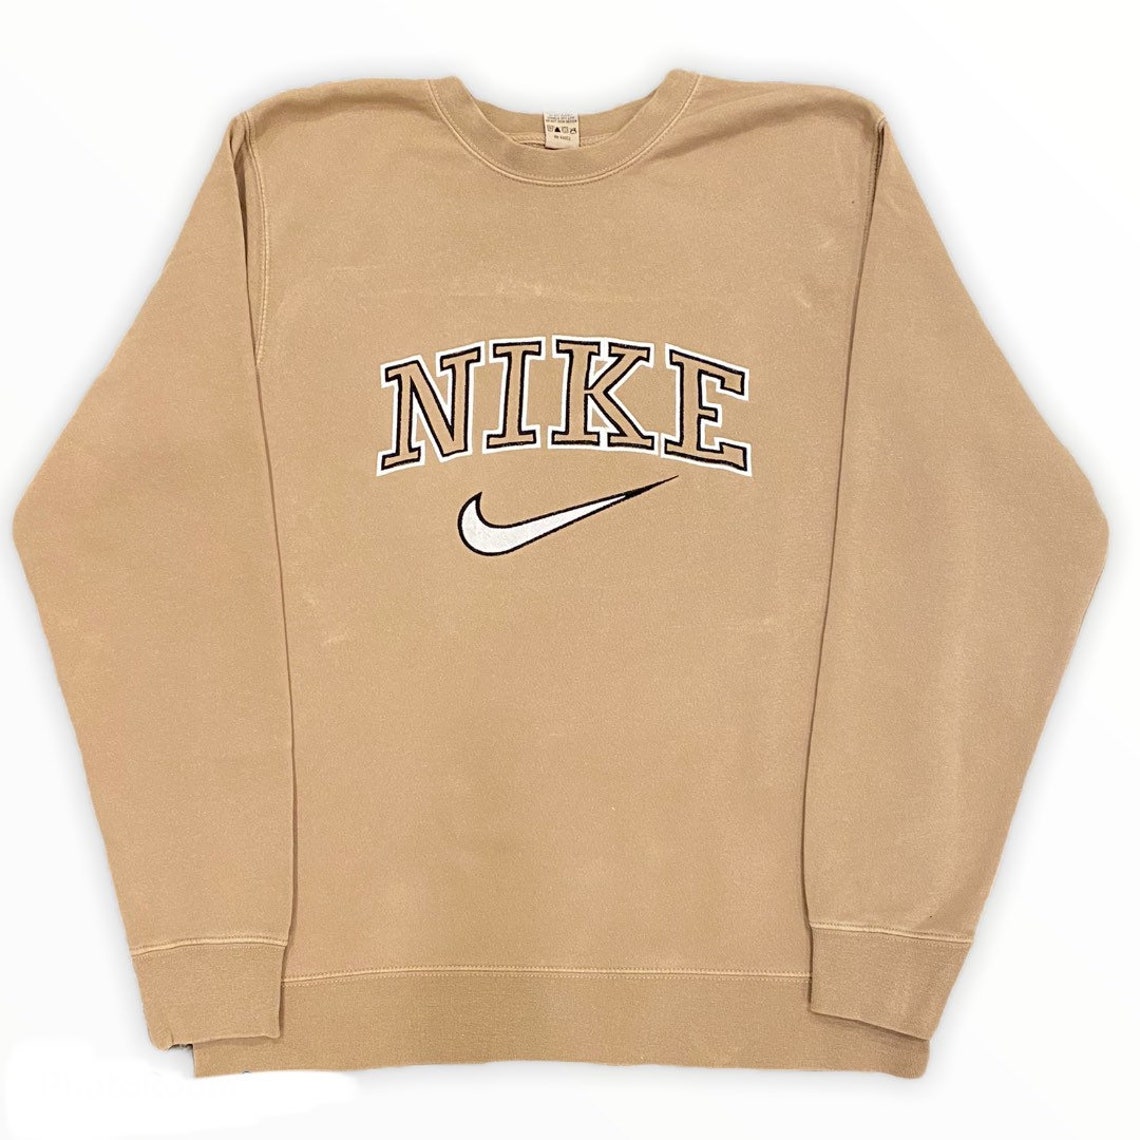 Nike Crewneck Nike sweatshirt Oversized Embroidered | Etsy